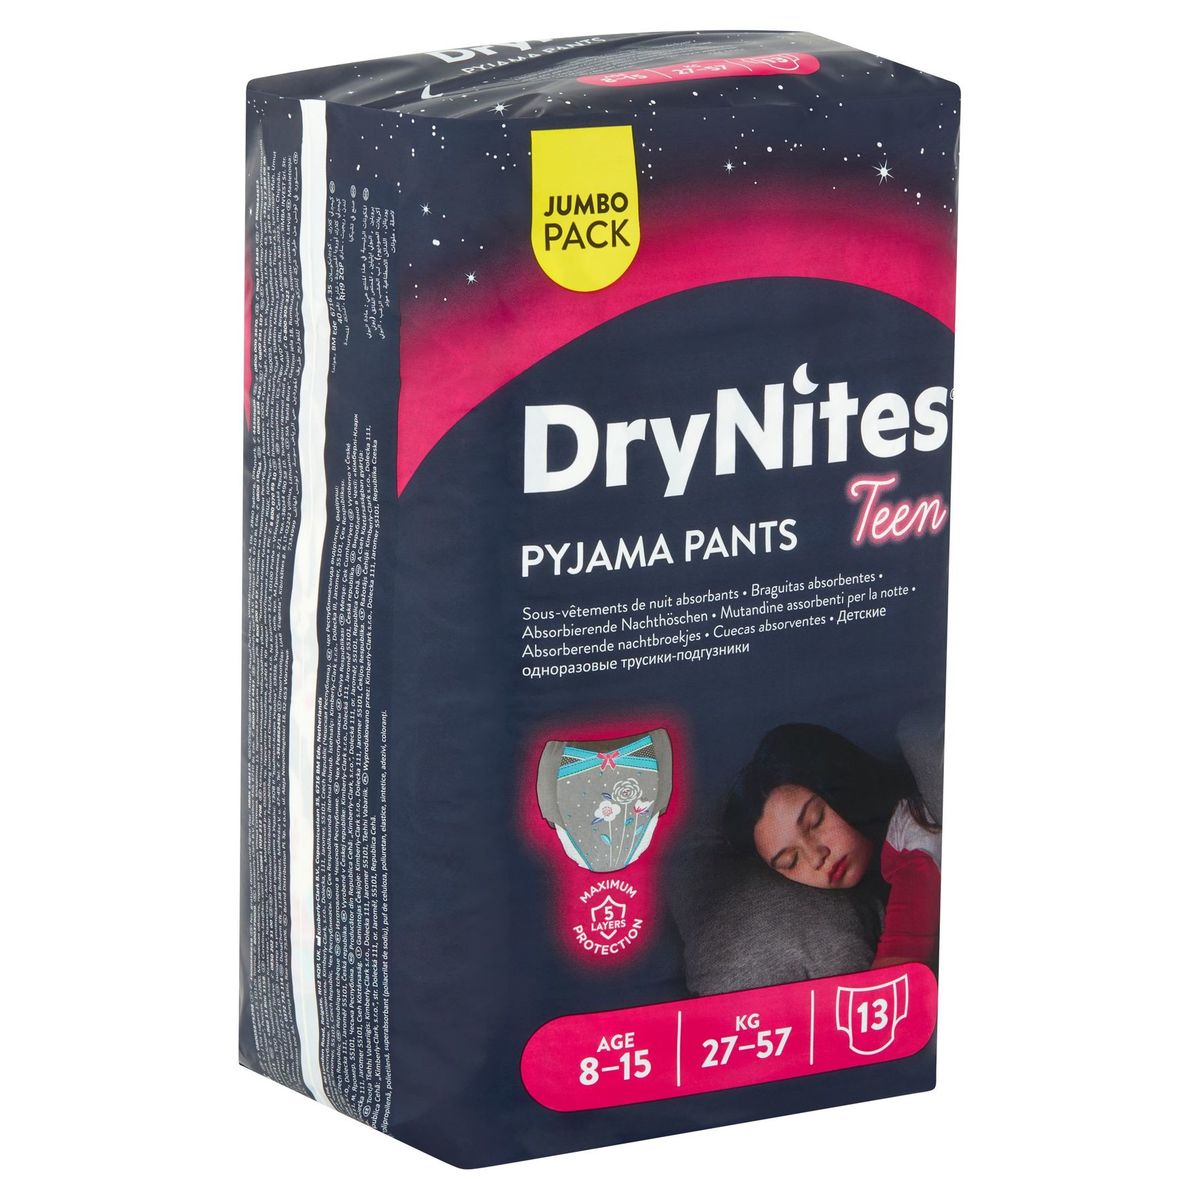 DryNites Pyjama Pants Teen Girl 8-15 Age 27-57 kg Jumbo Pack 13 Pièces